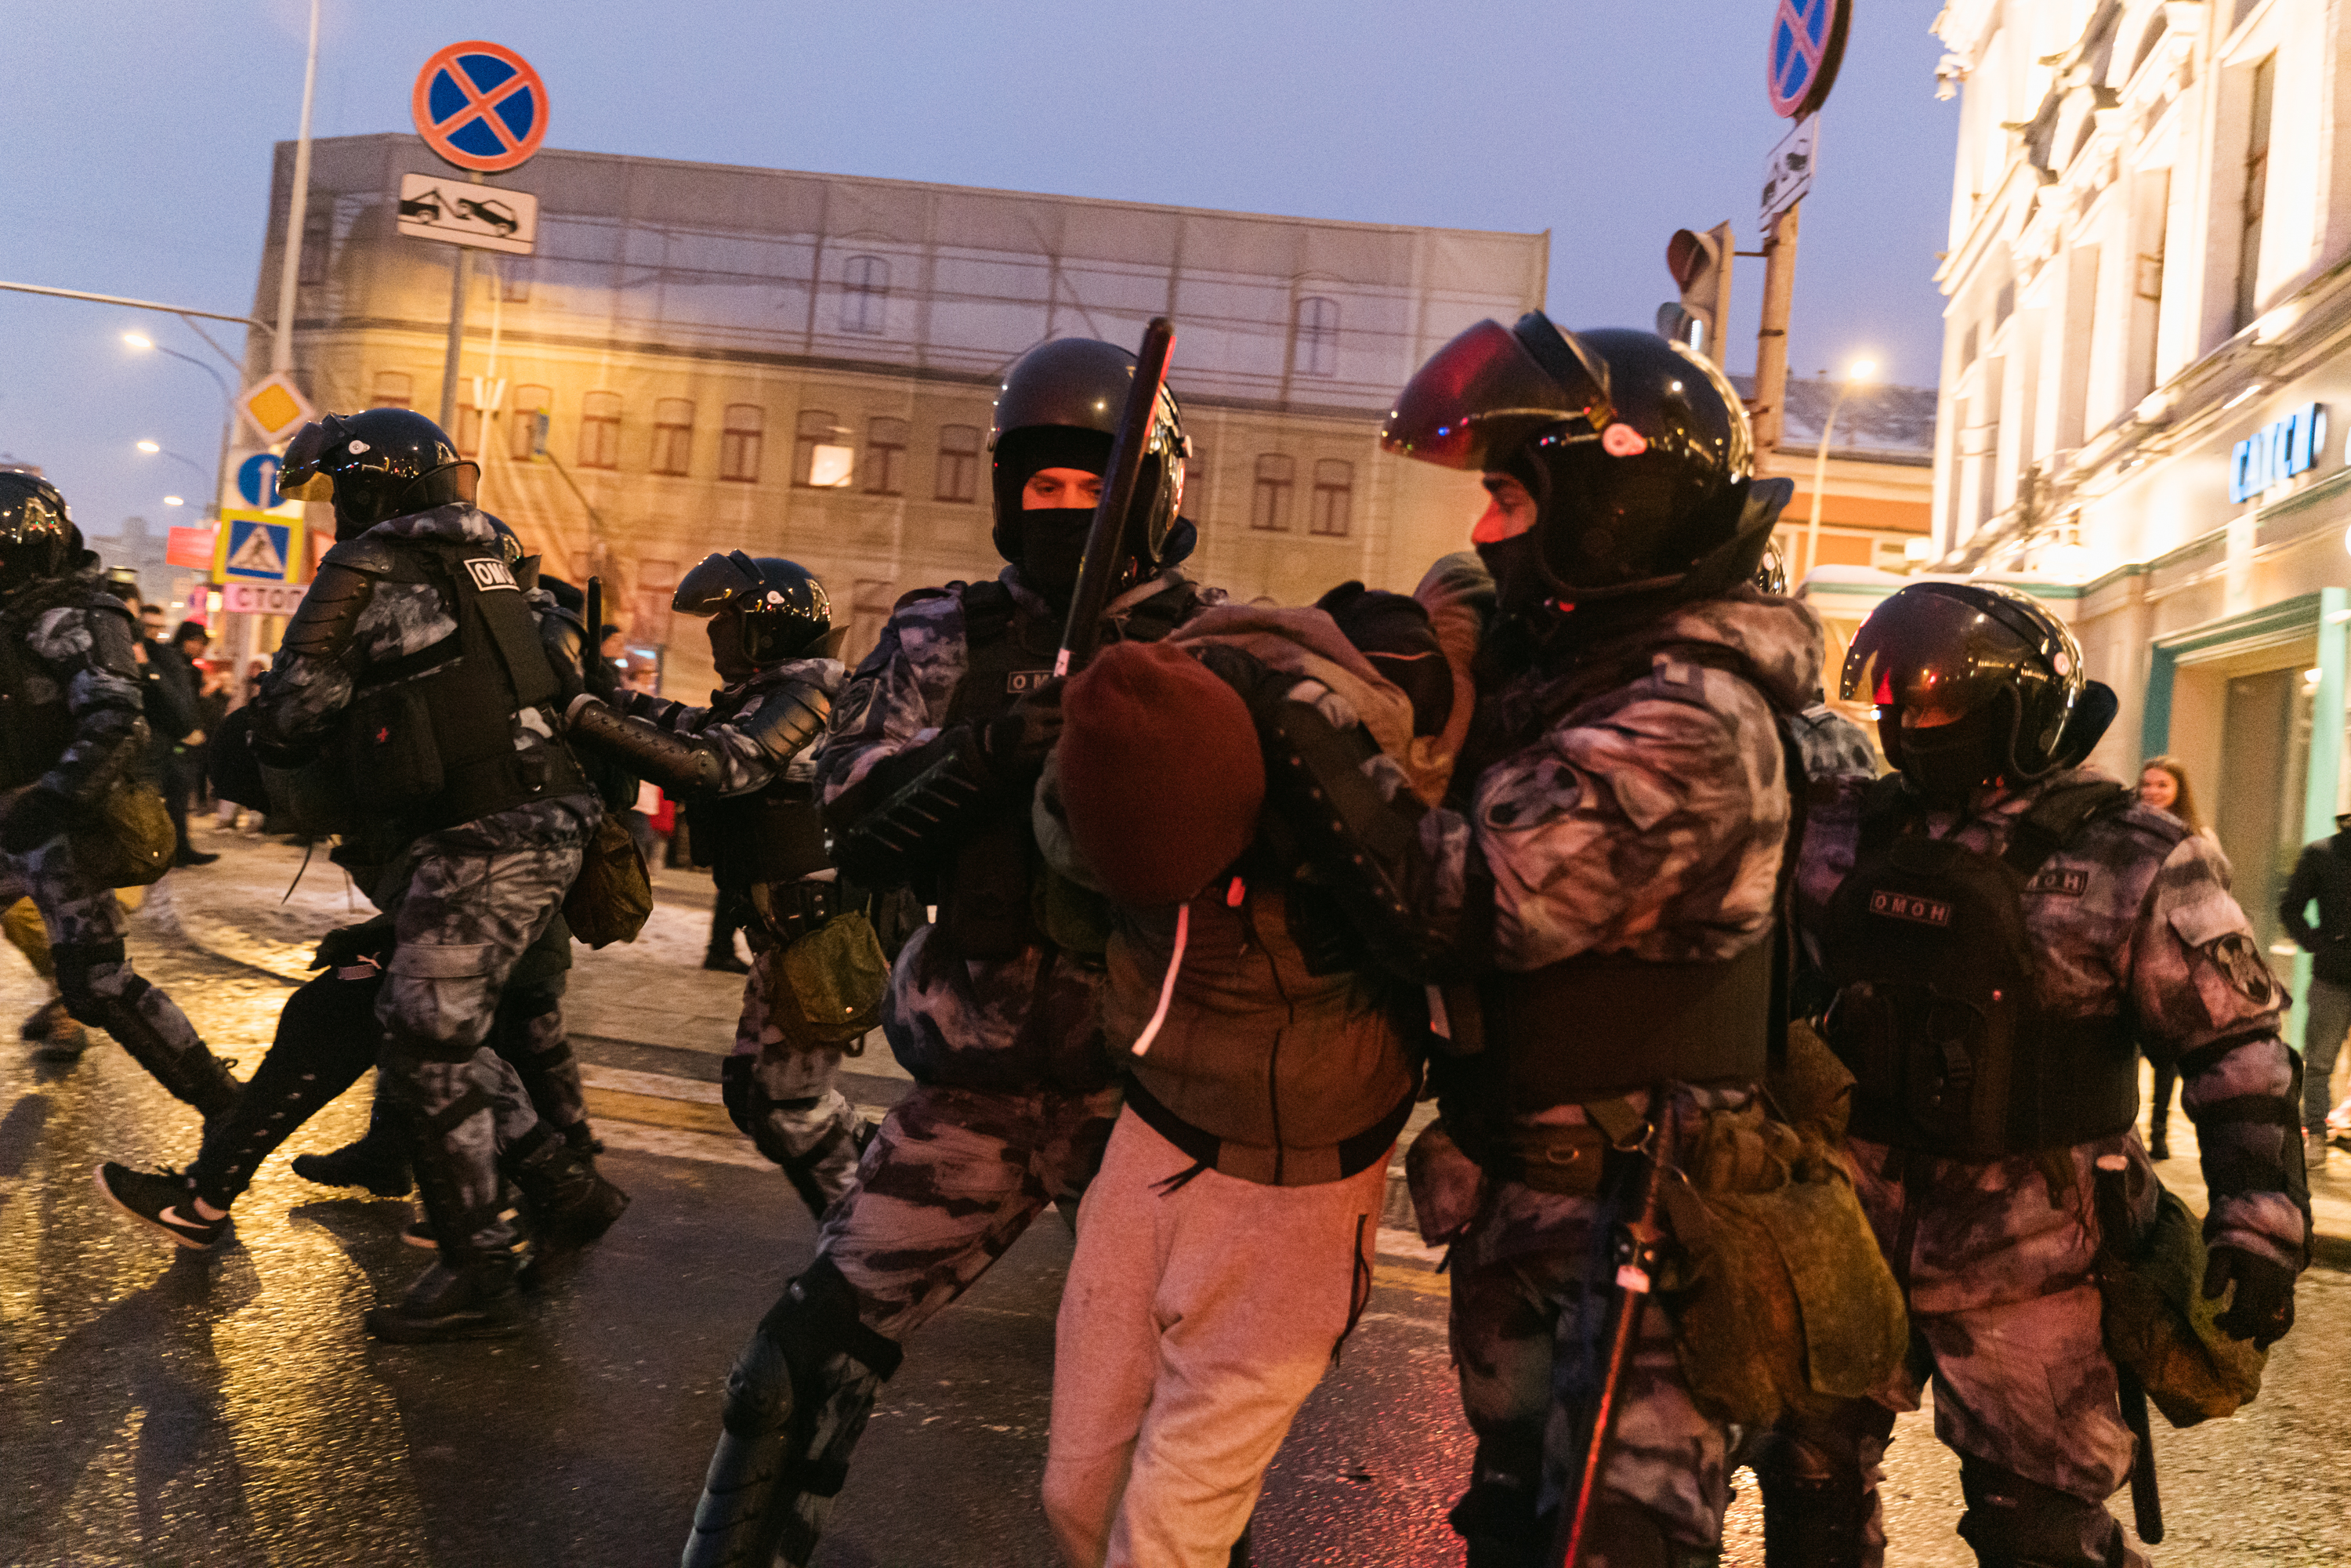 Задержание протестующего рядом с Трубной площадью, Москва, 23 января 2021 года / Фото: Наталия Буданцева для ОВД-Инфо